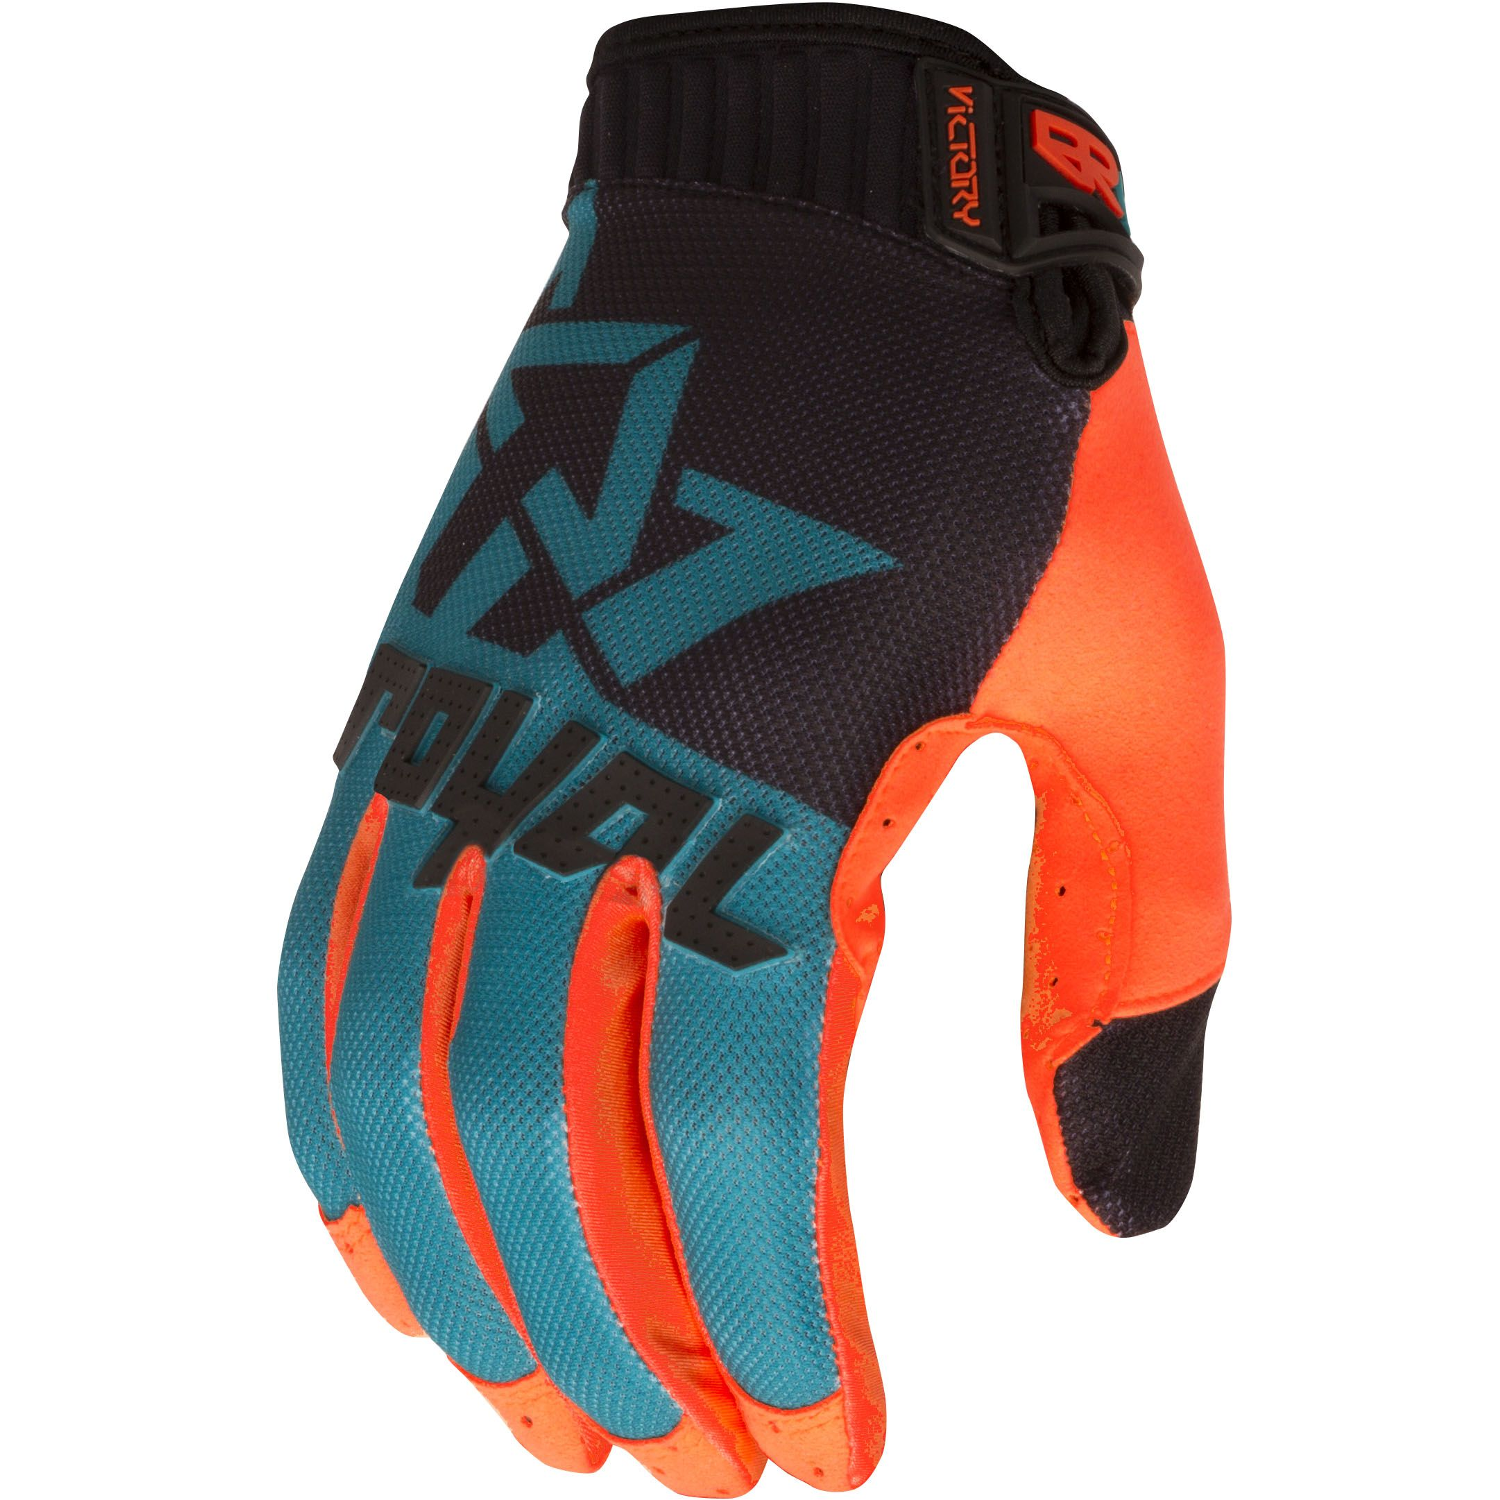 Royal Racing Gloves Victory Black/Teal/Bright Orange